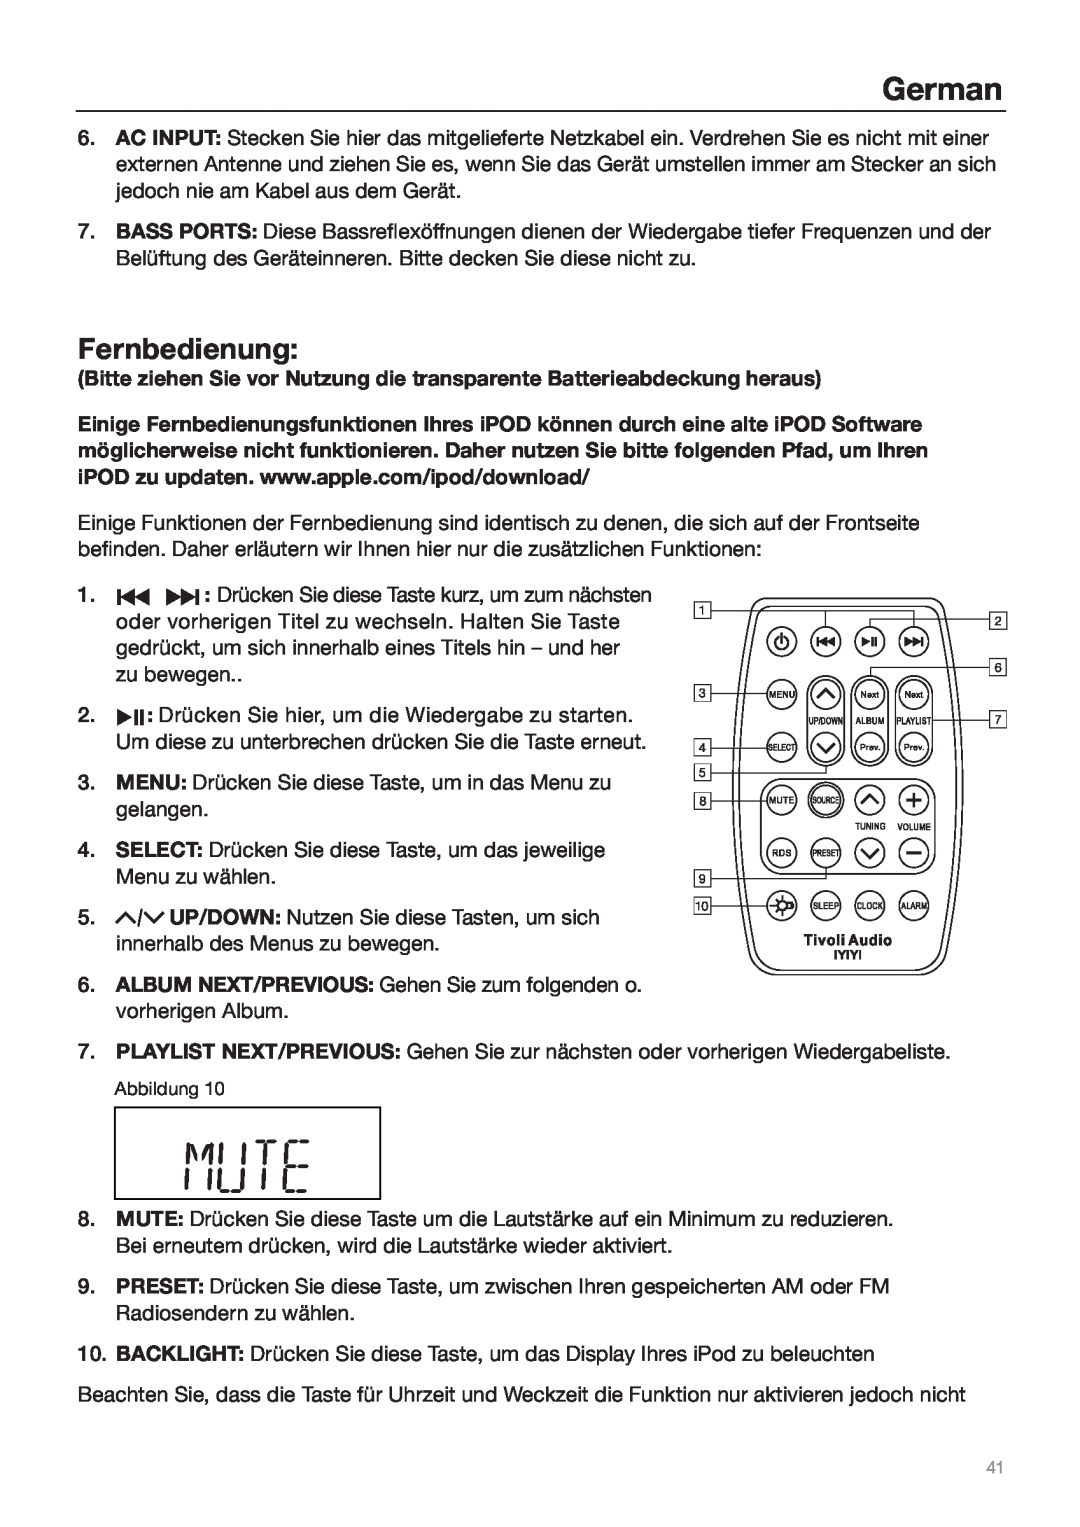 Tivoli Audio Sound System owner manual Fernbedienung, German 